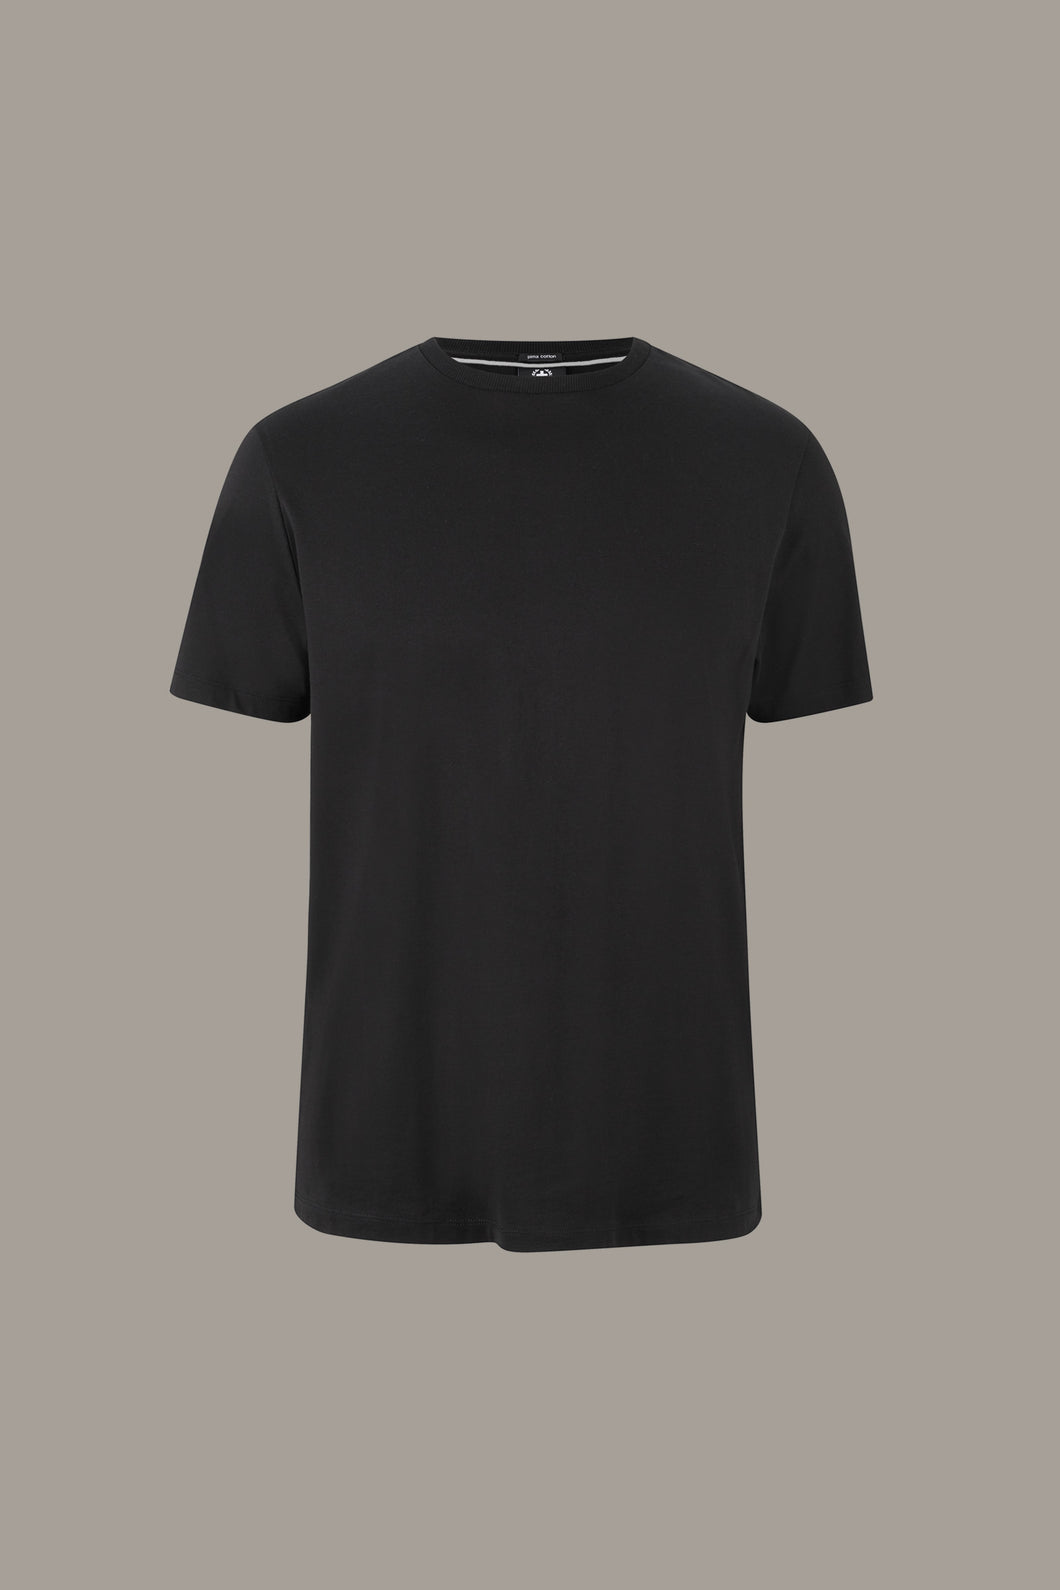 Strellson, Clark Black Basic T-Shirt